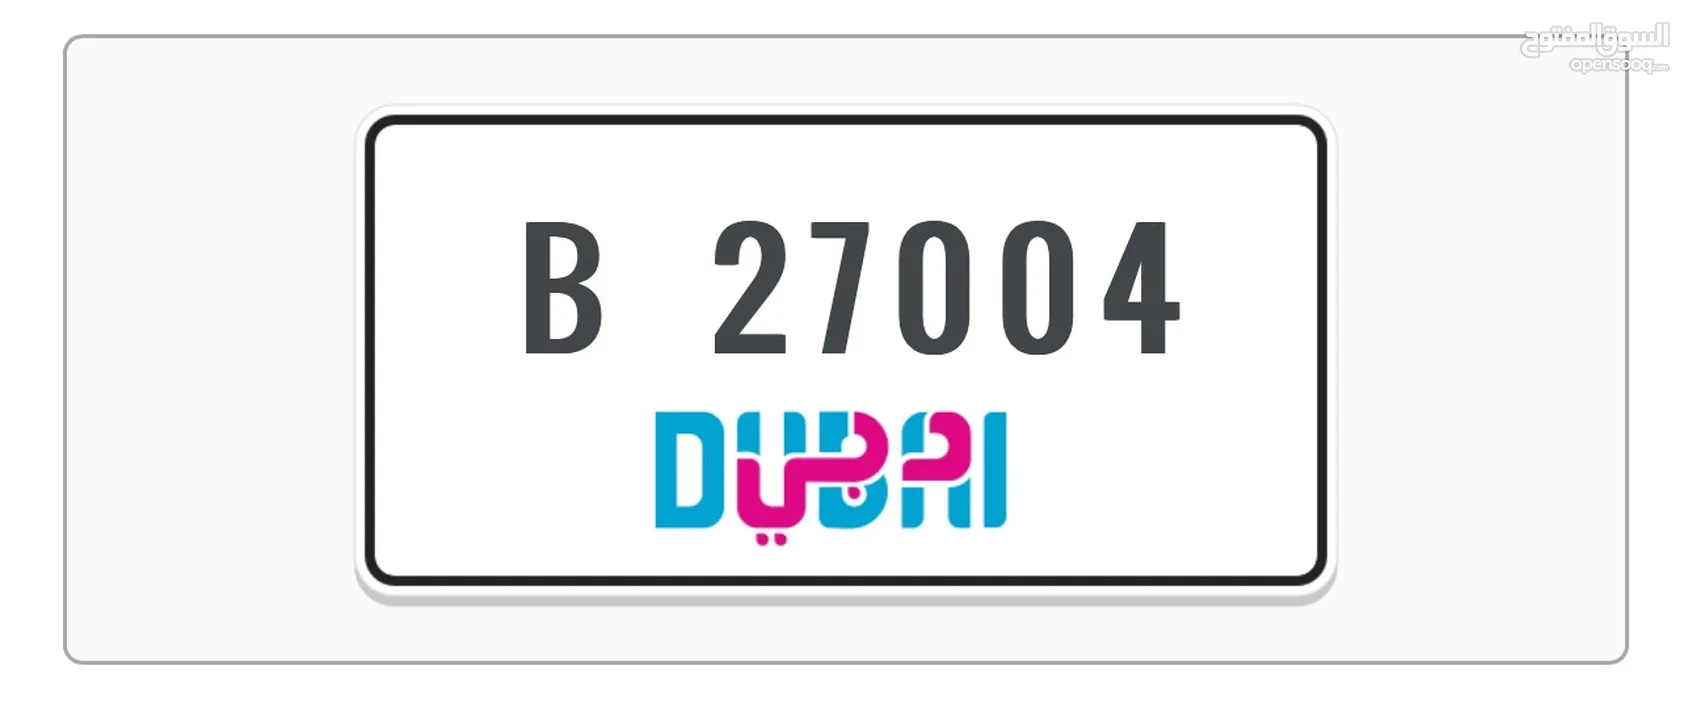 للبيع رقم دبي مميز DUBAI B 27004